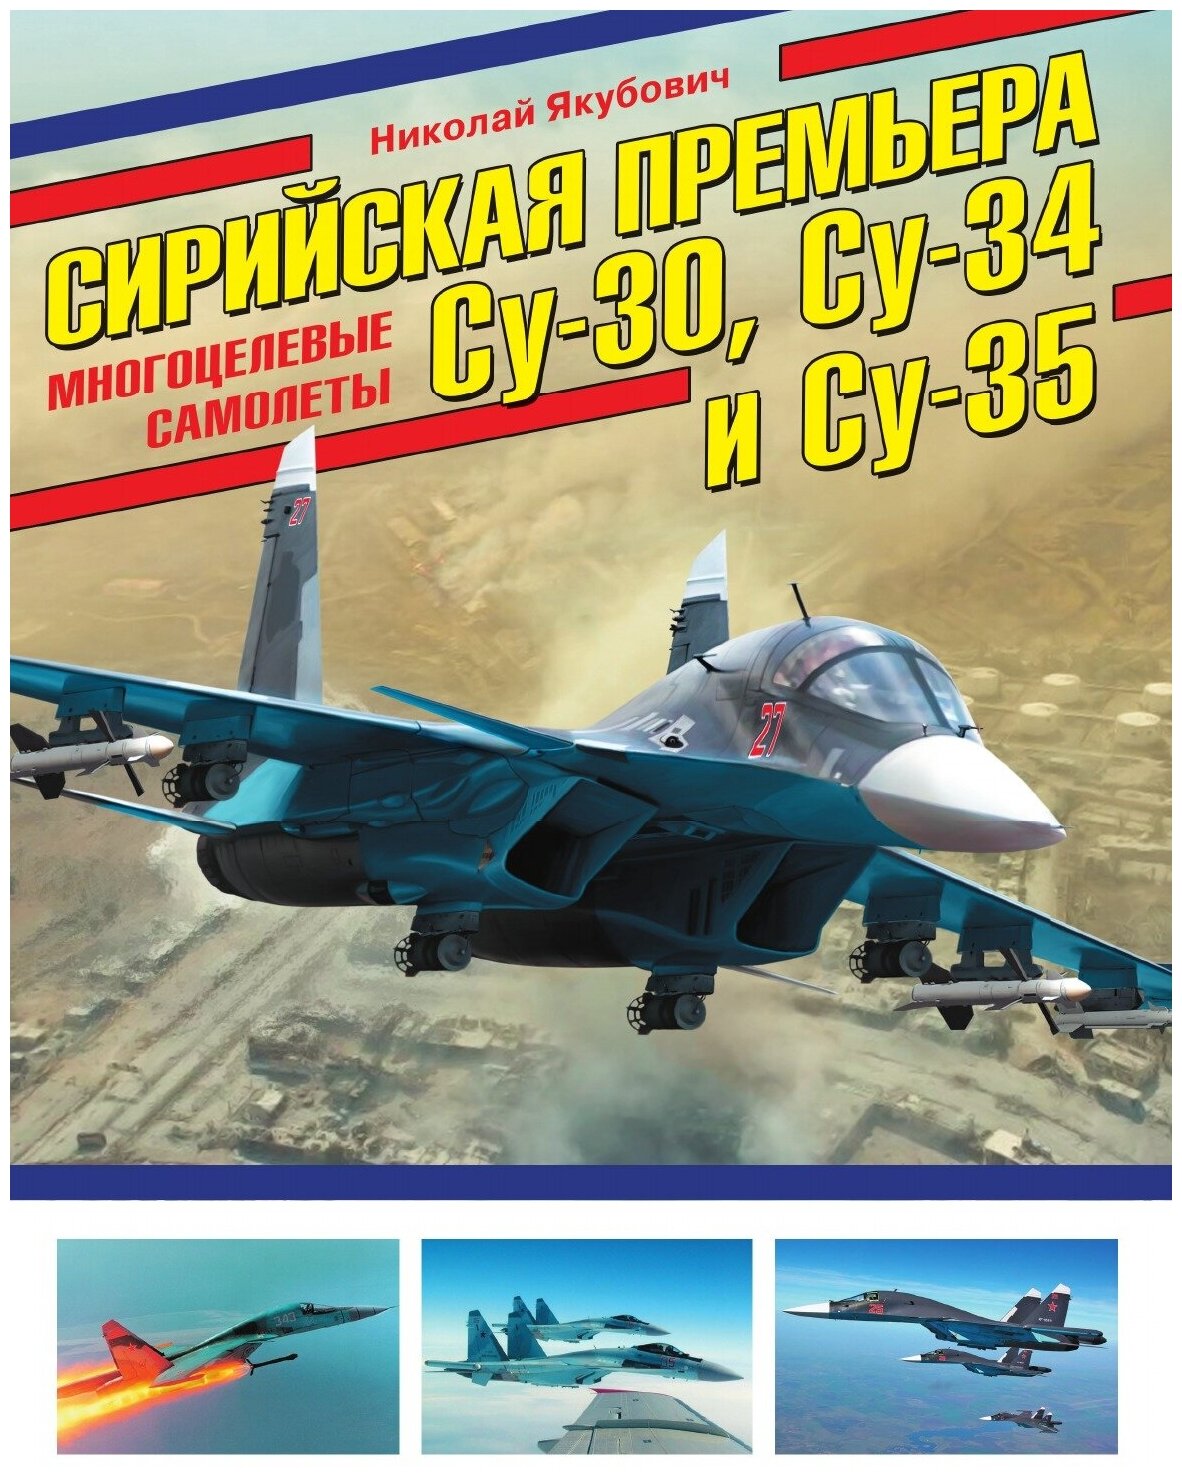 Сирийская премьера. Многоцелевые самолеты Су-30, Су-34 и Су-35. Многоцелевые самолеты Су-30, Су-34 и Су-35